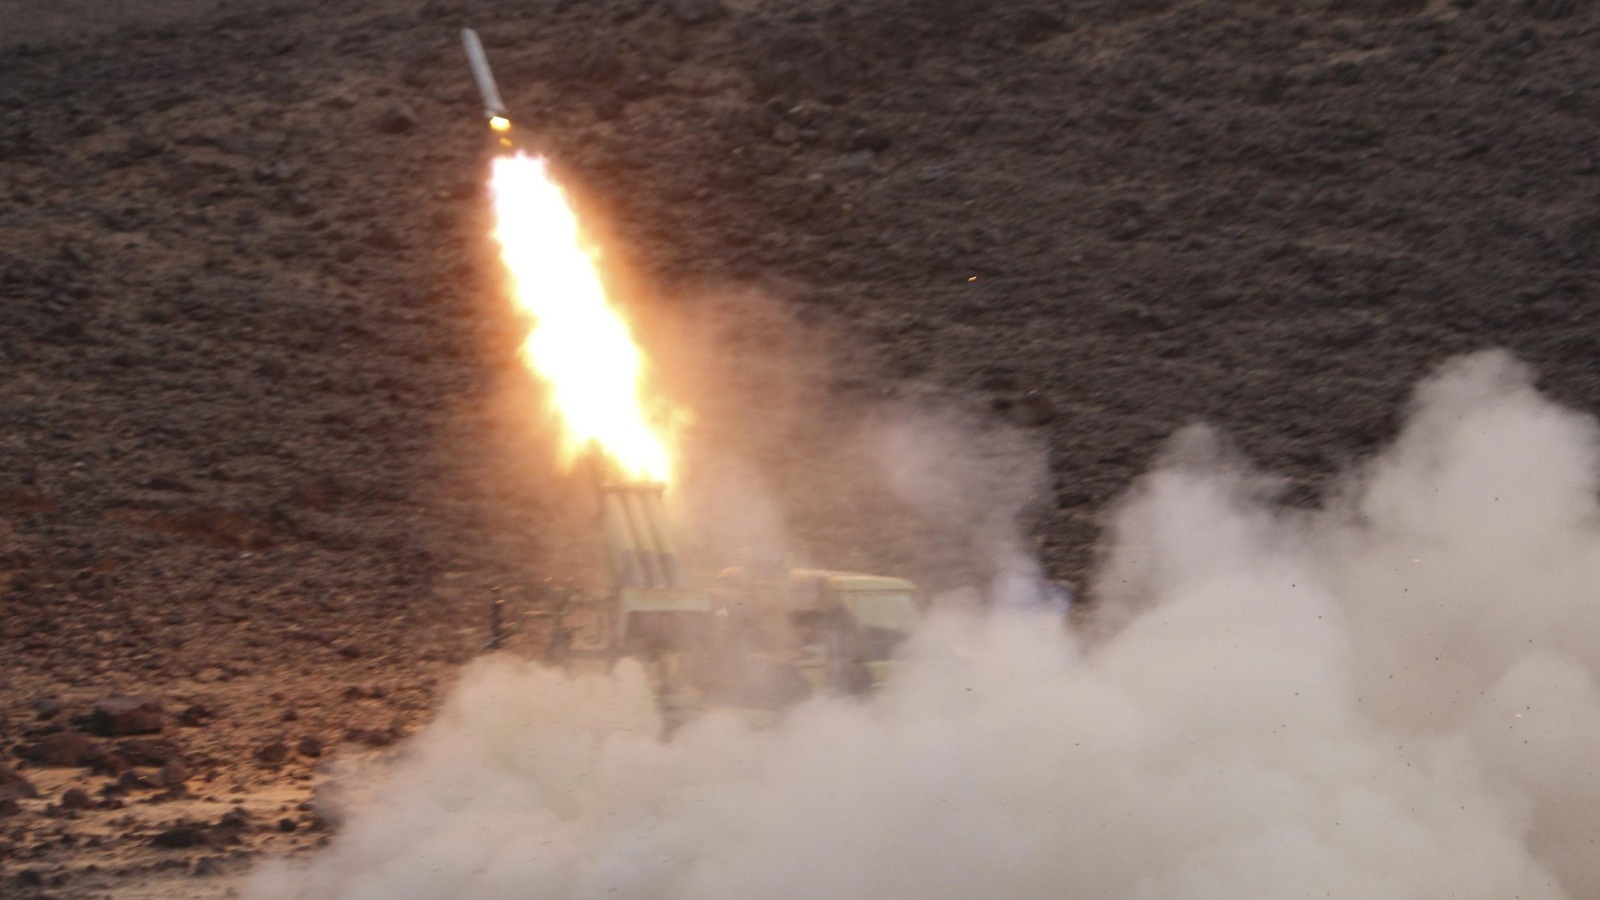 عناصر المقاومة الشعبية تطلق صاروخا في معارك مع الحوثيين صرواح بمحافظة مأرب (غيتي/الفرنسية)